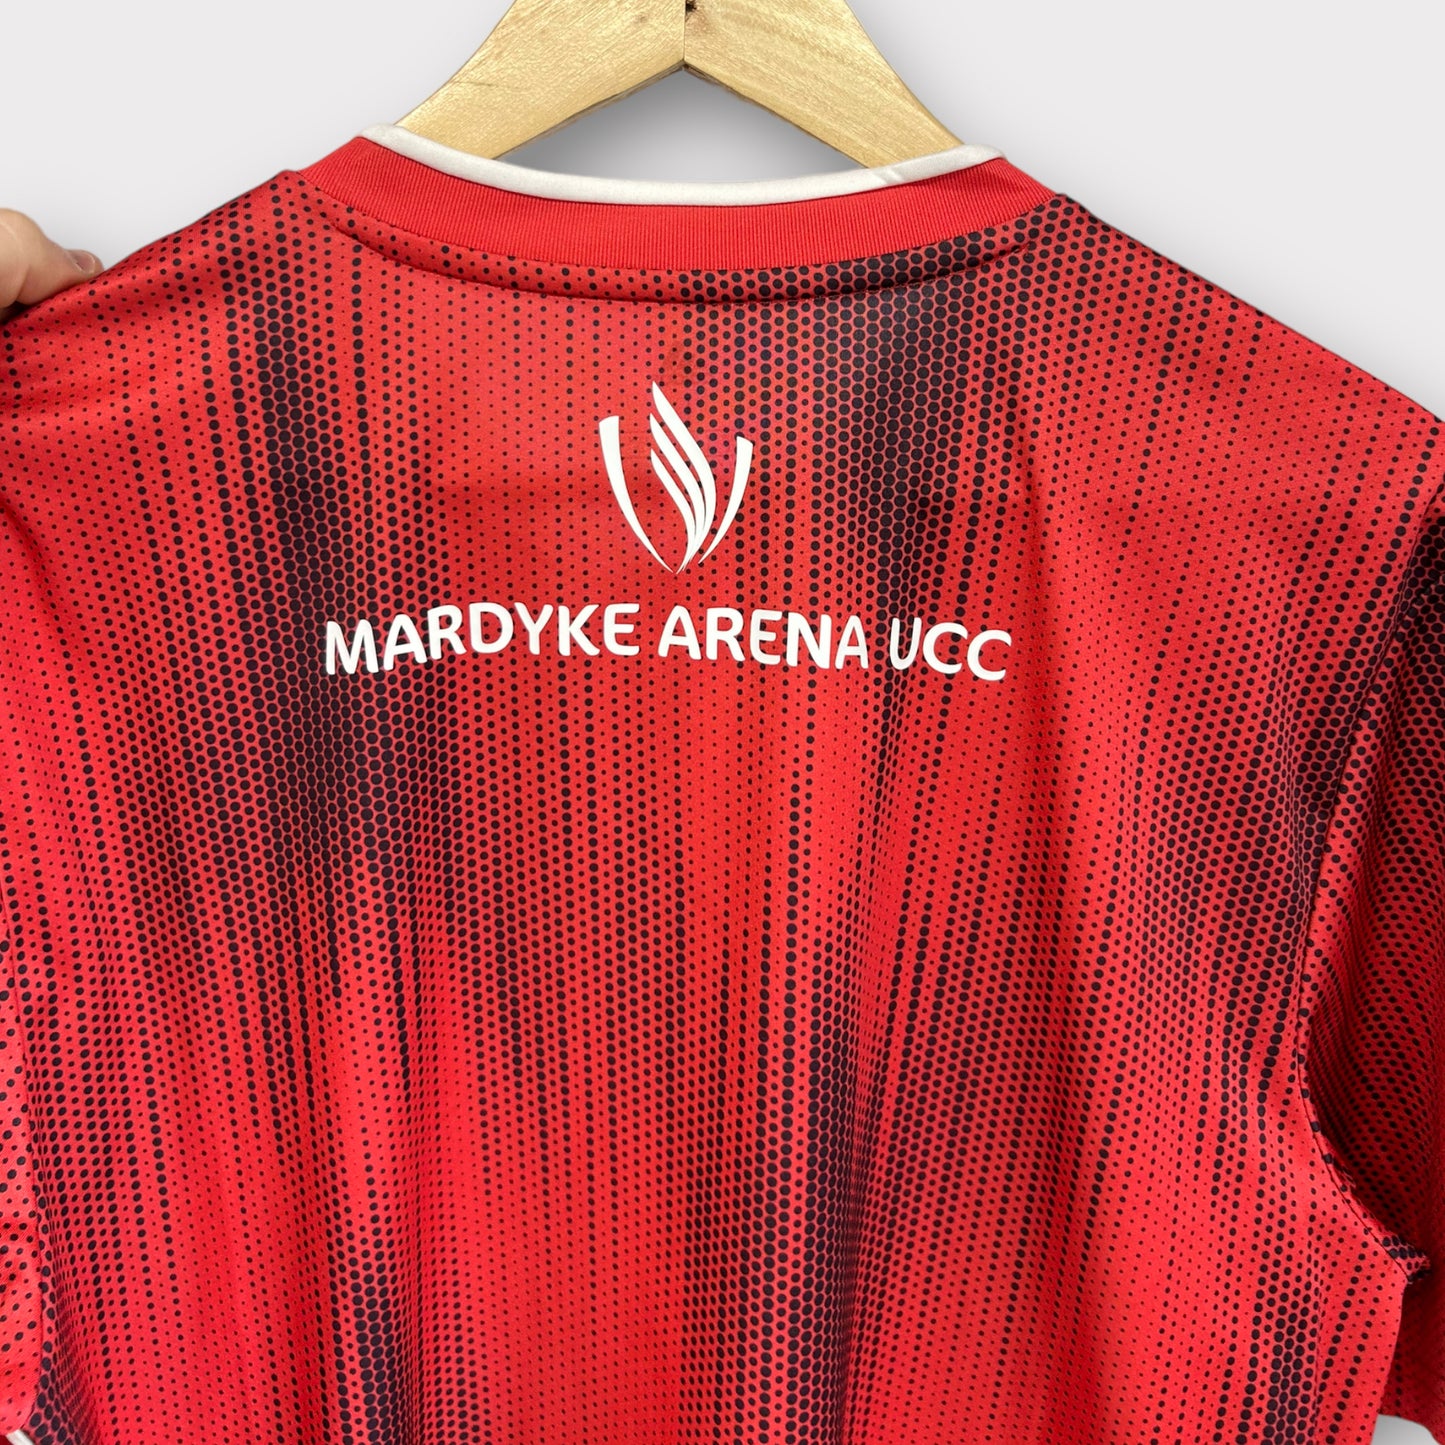 Cork City FC 2020 Away Shirt (Large)